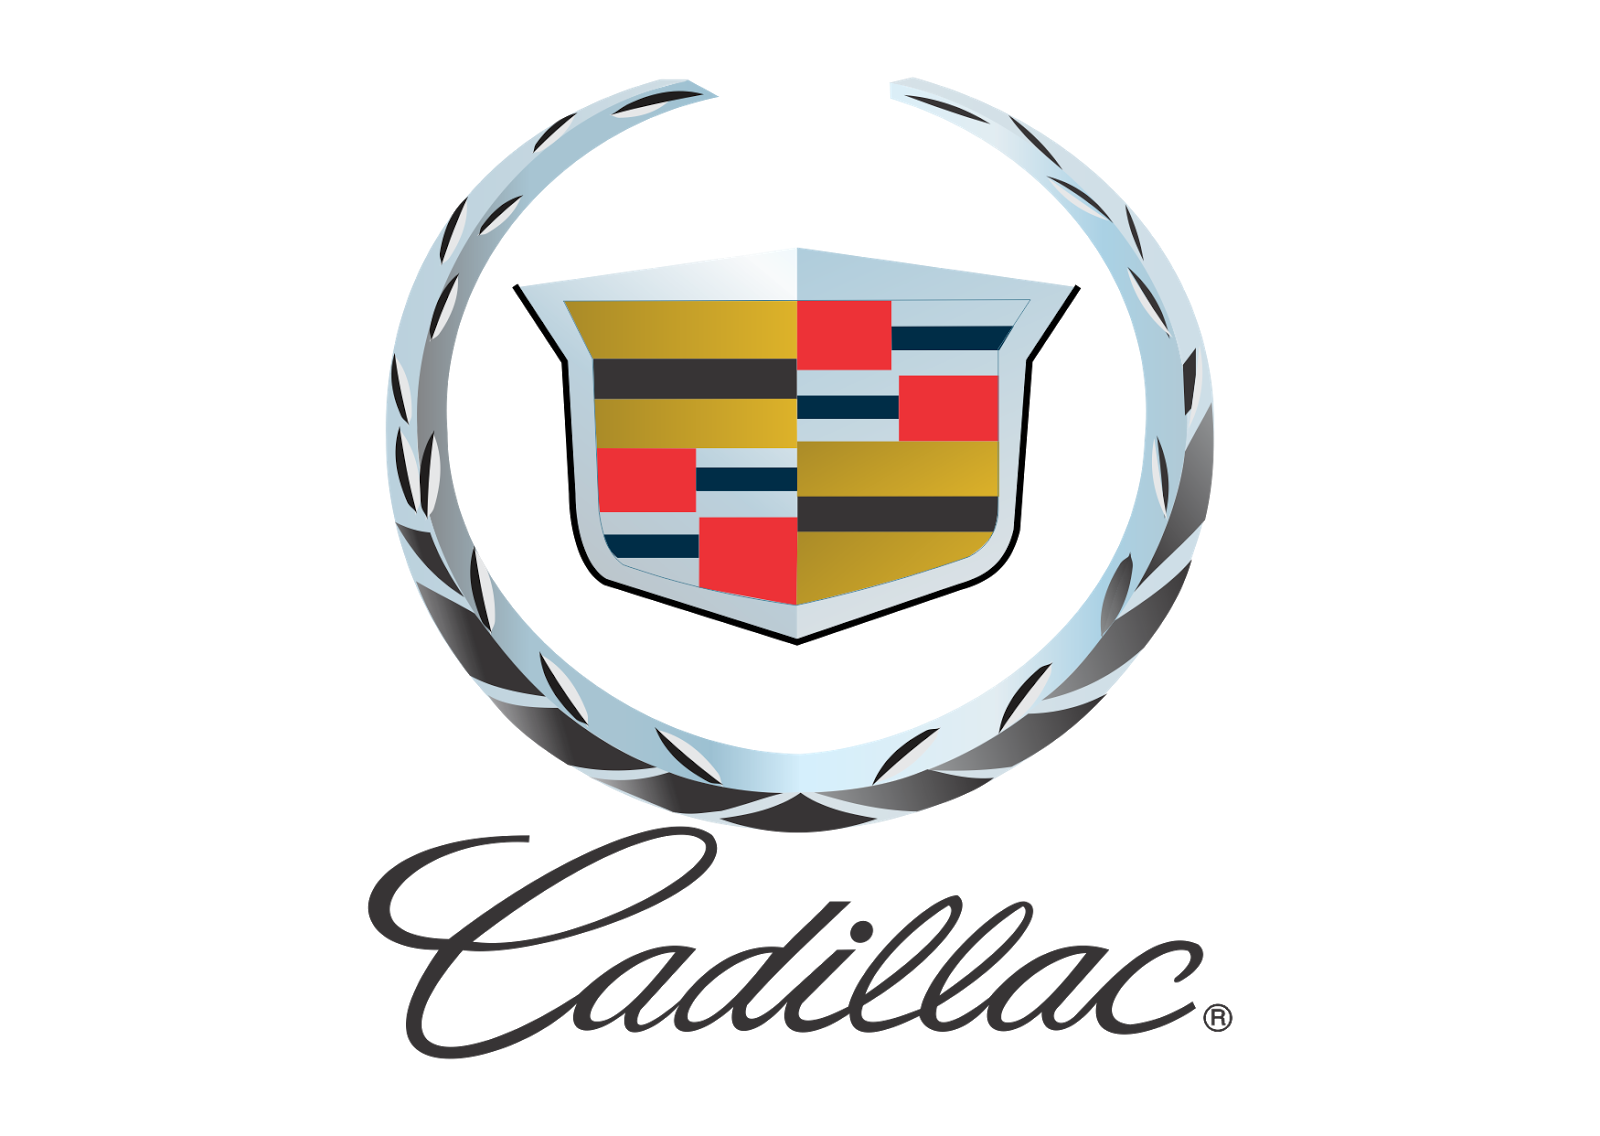 Cadillac logo PNG